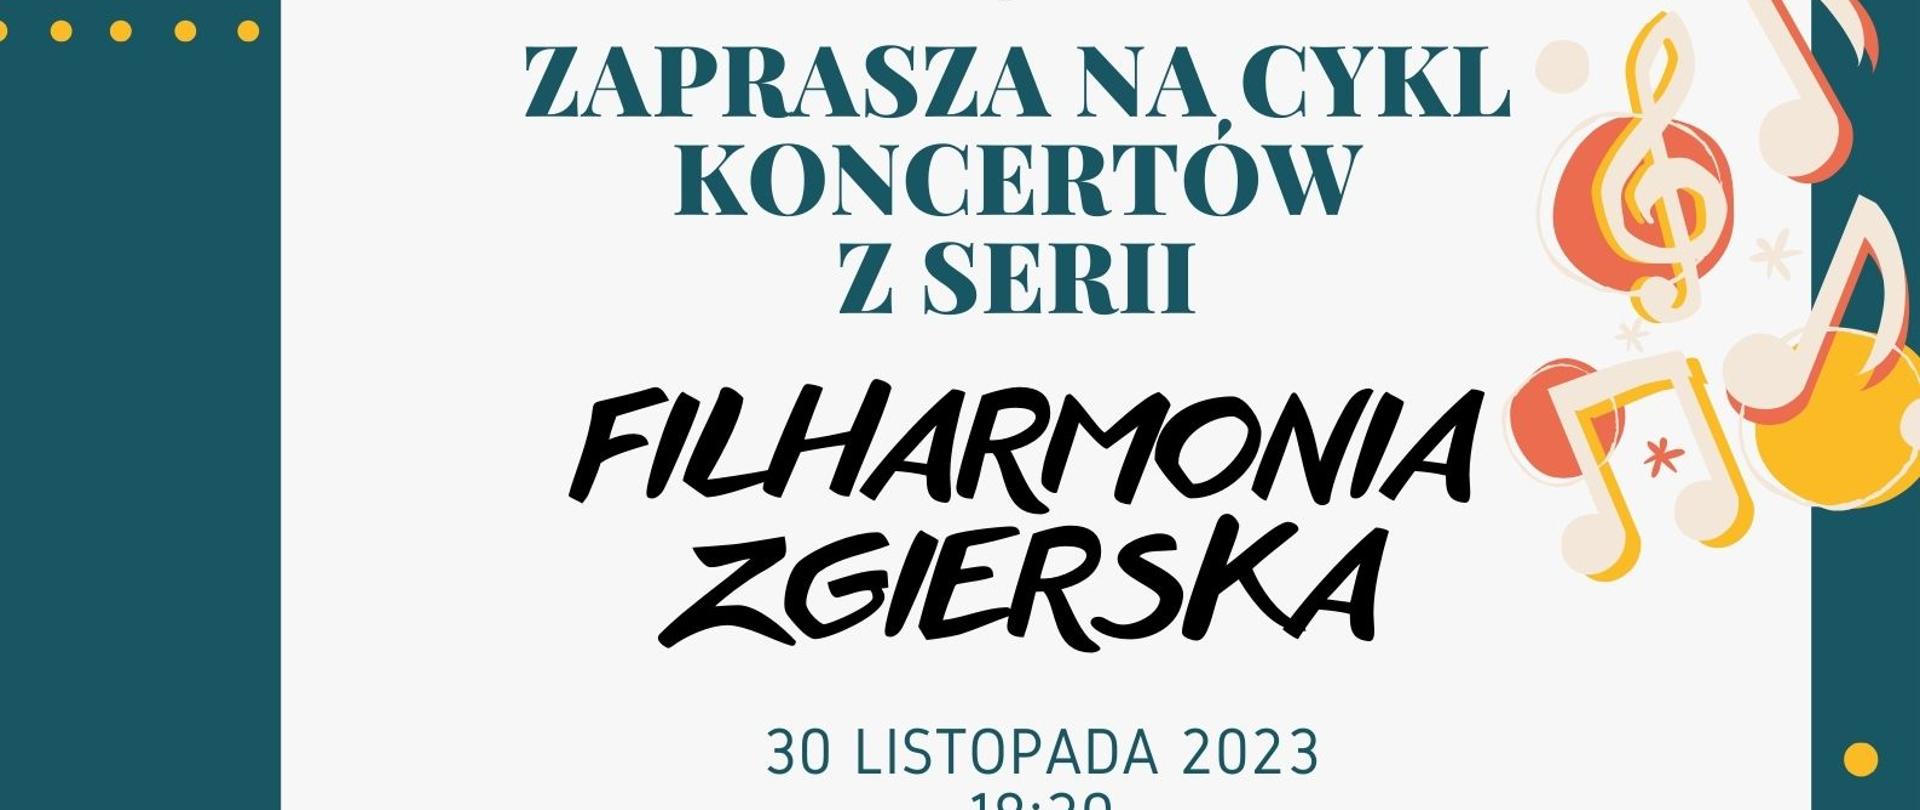 Plakat - zaproszenie na cykl koncertów - Filharmonia Zgierska